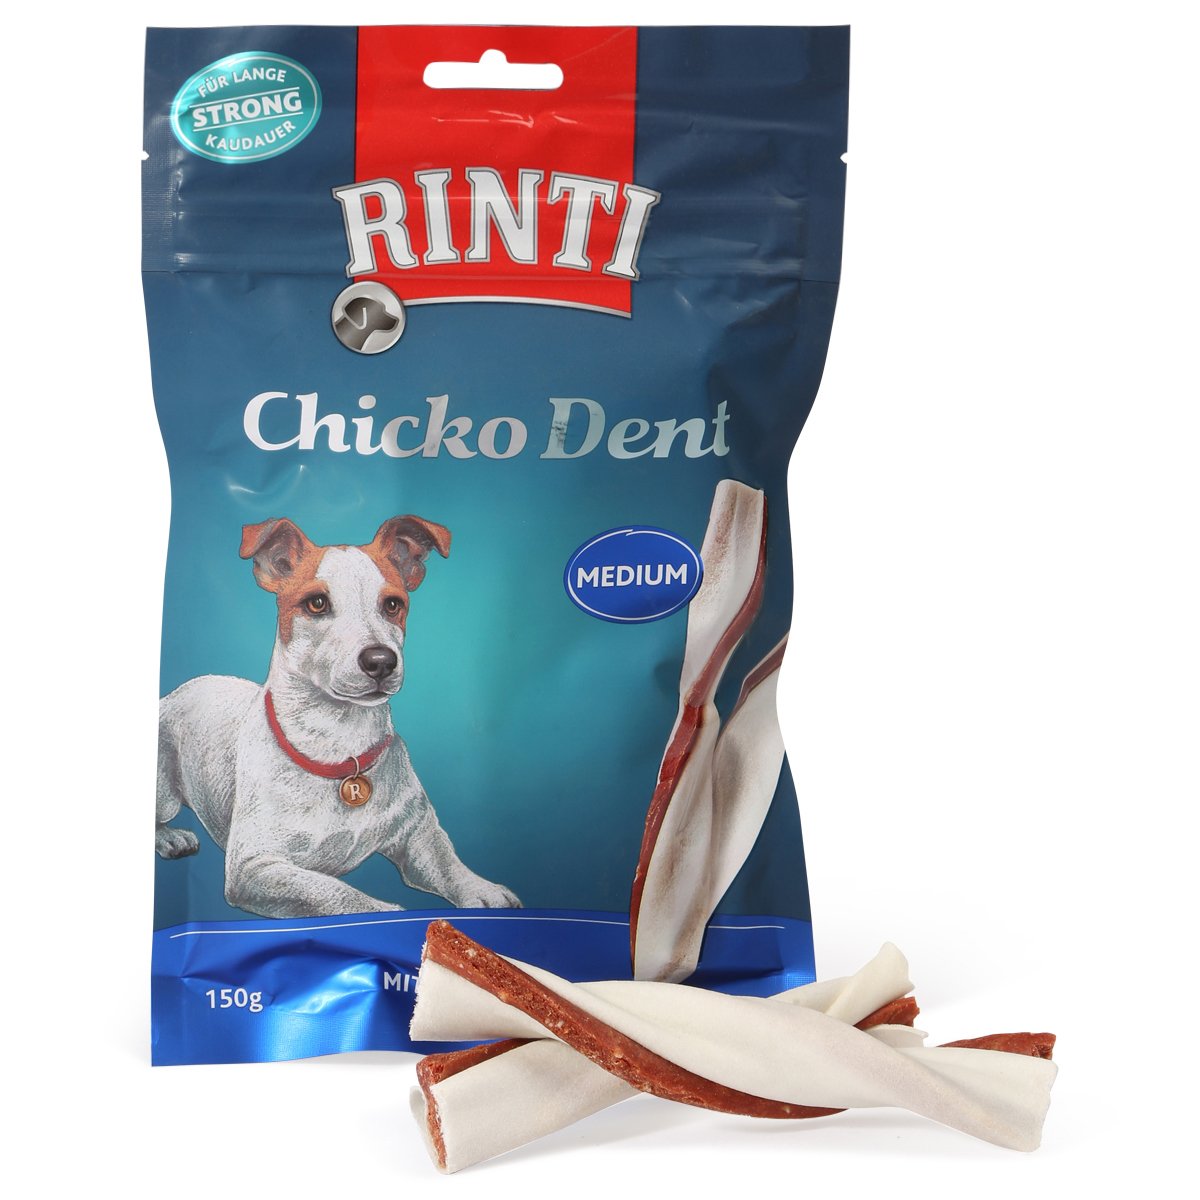 Rinti Chicko Dent Medium s kachními filety 3 × 150 g